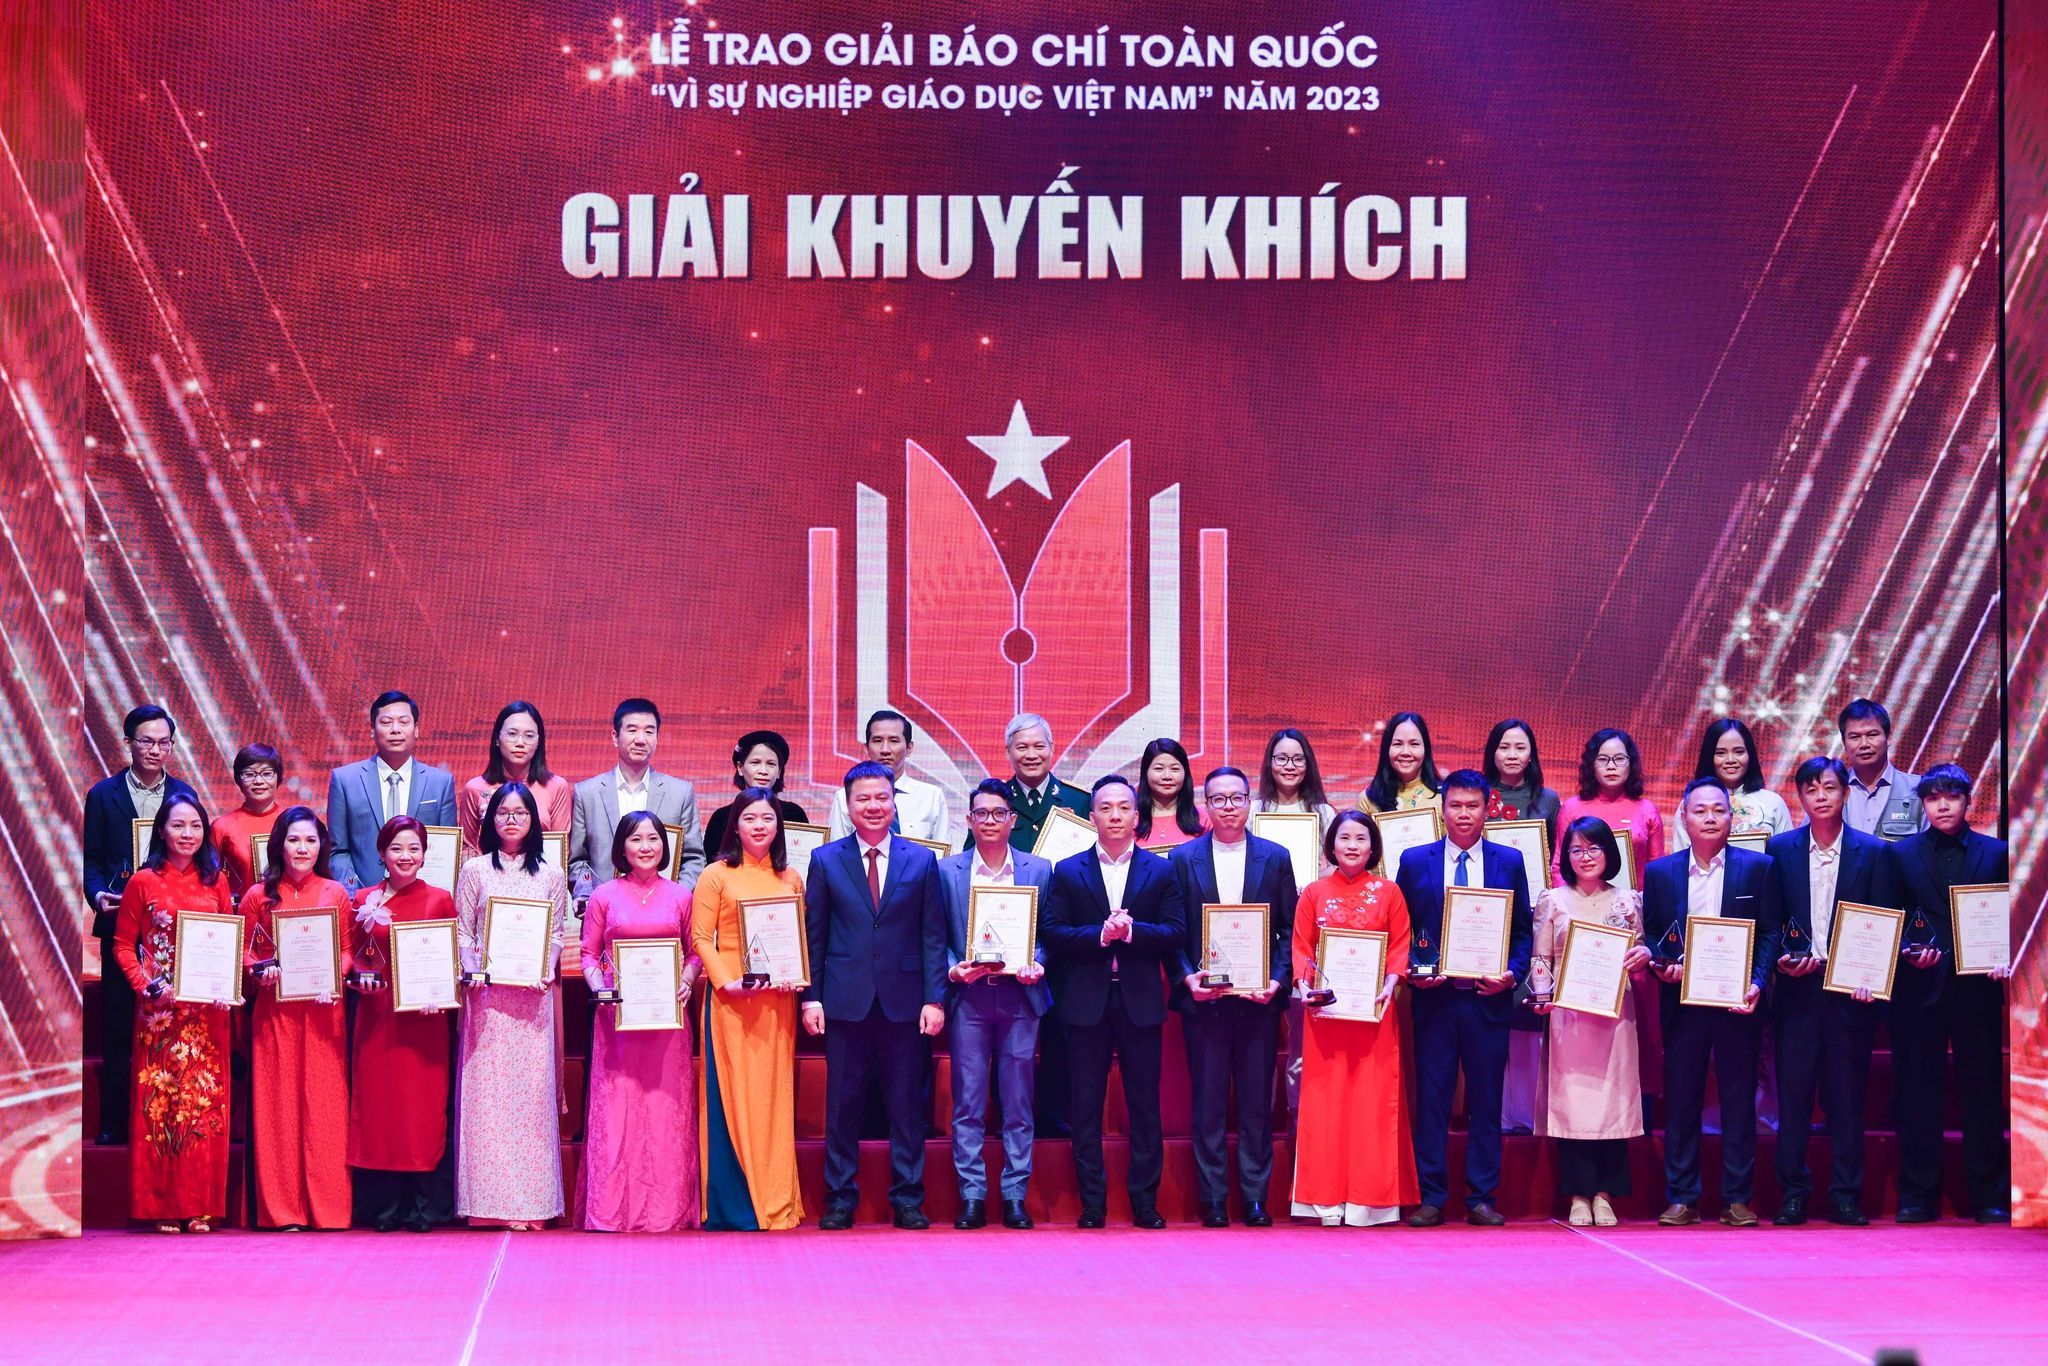 Nhà báo Triệu Ngọc Lâm, Tổng Biên tập Báo Giáo dục và Thời đại và ông Phạm Tiến Toàn, Phó Chánh văn phòng Bộ GD&ĐT trao giải cho các tác giải đoạt giải Khuyến khích.